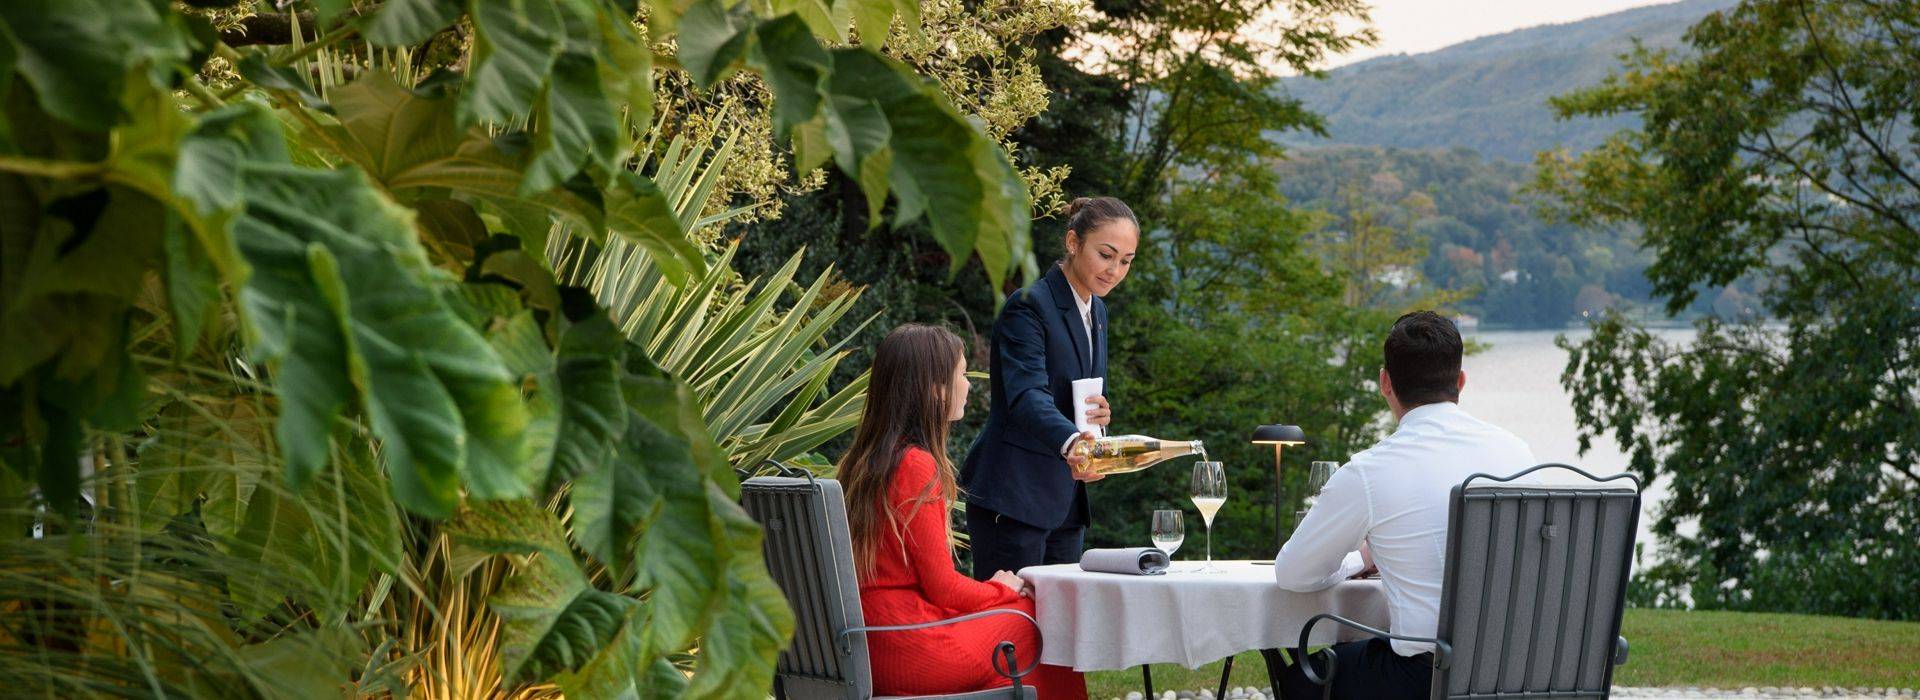 villa-crespi-ristorante-antonio-cannavacciuolo-Francesca Pagliai-Dinner-under-stars.jpg